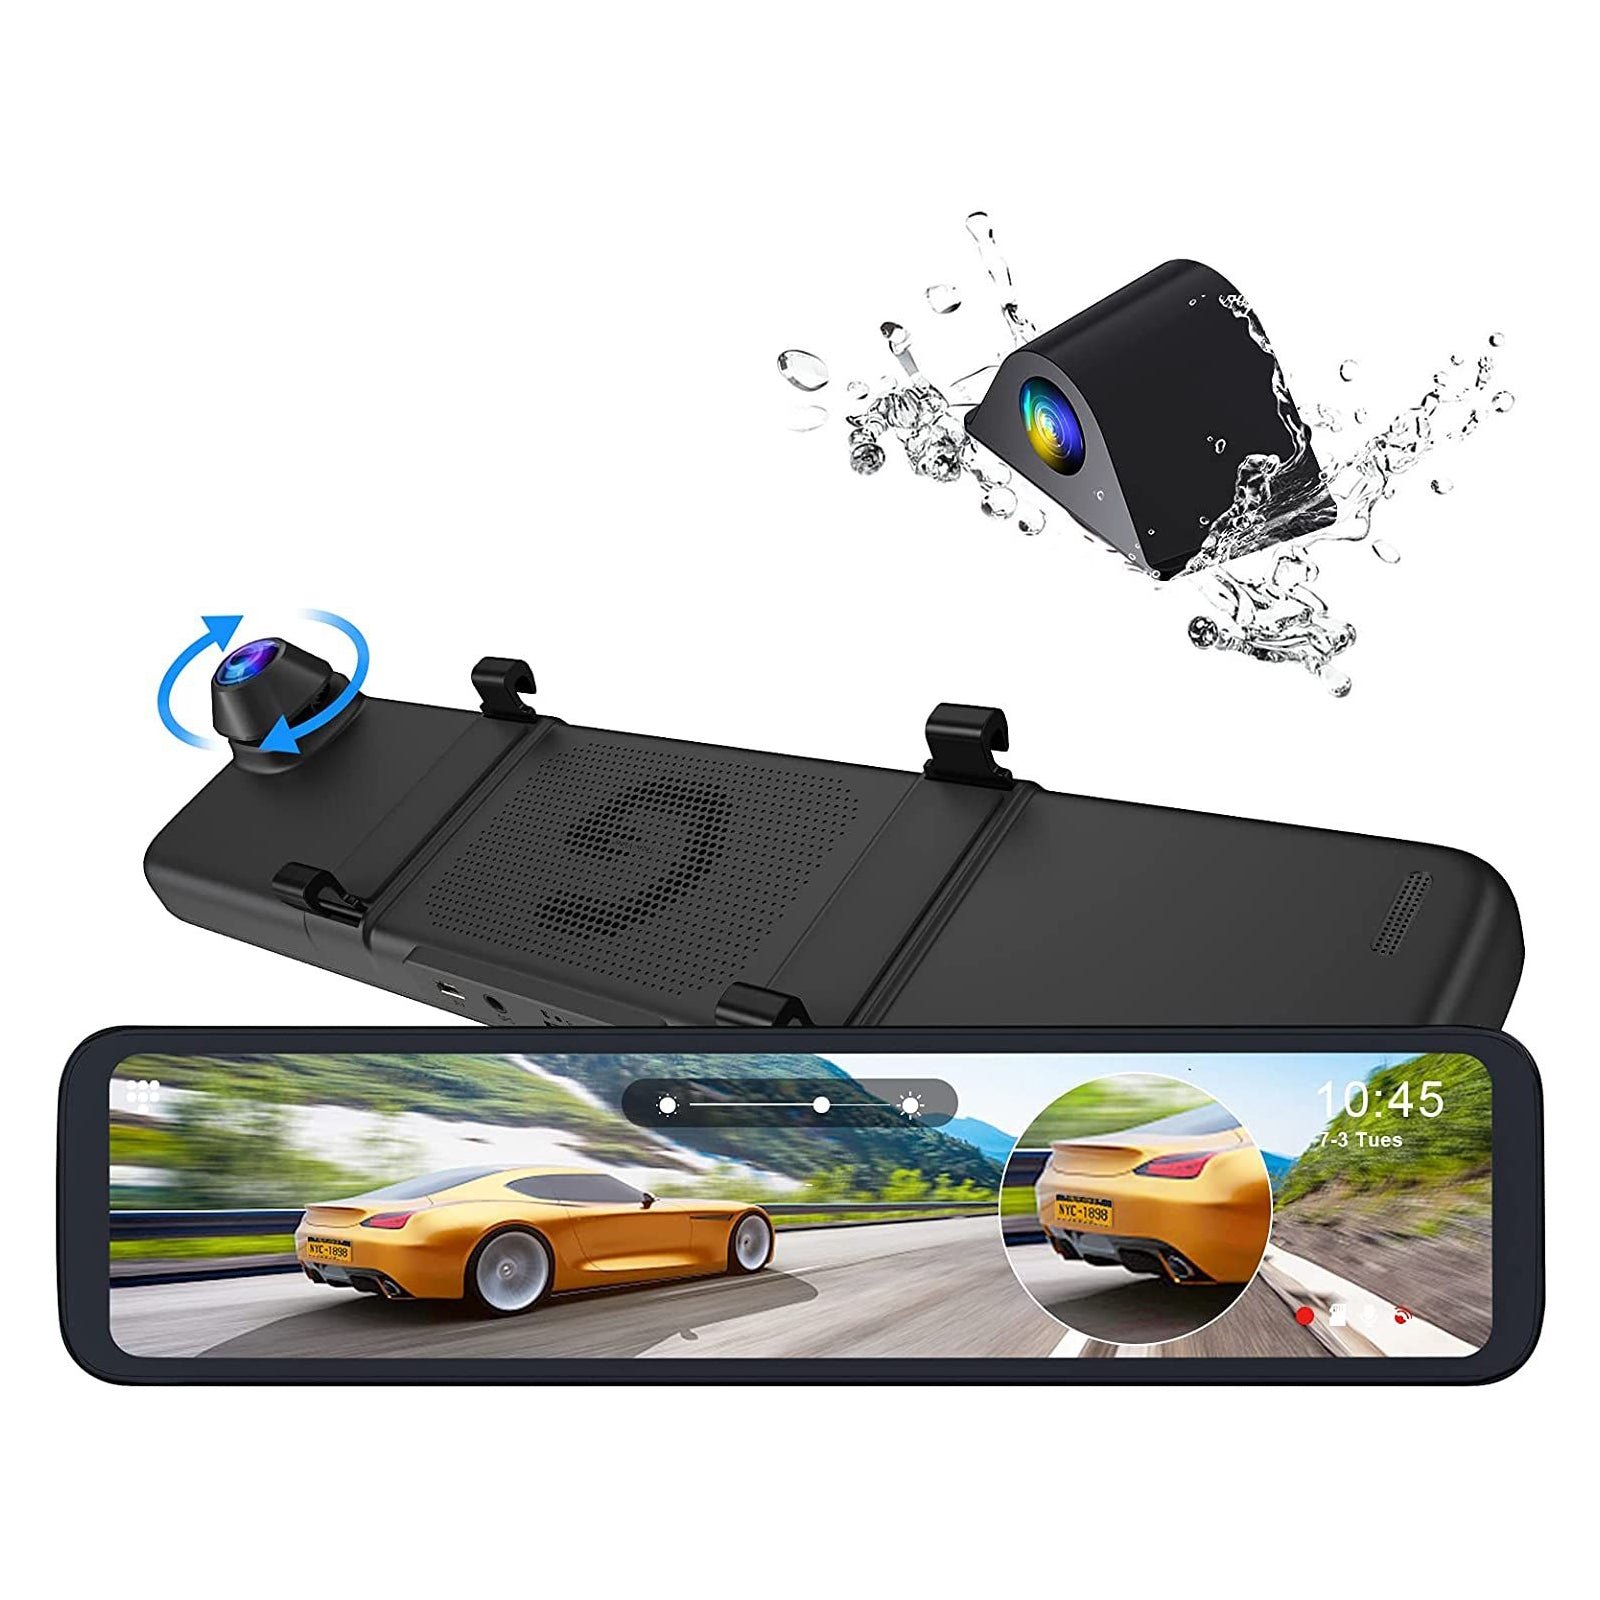 NexiGo D80 12" mirror dash cam with 2.5K front camera and 1080P waterproof rear camera. 